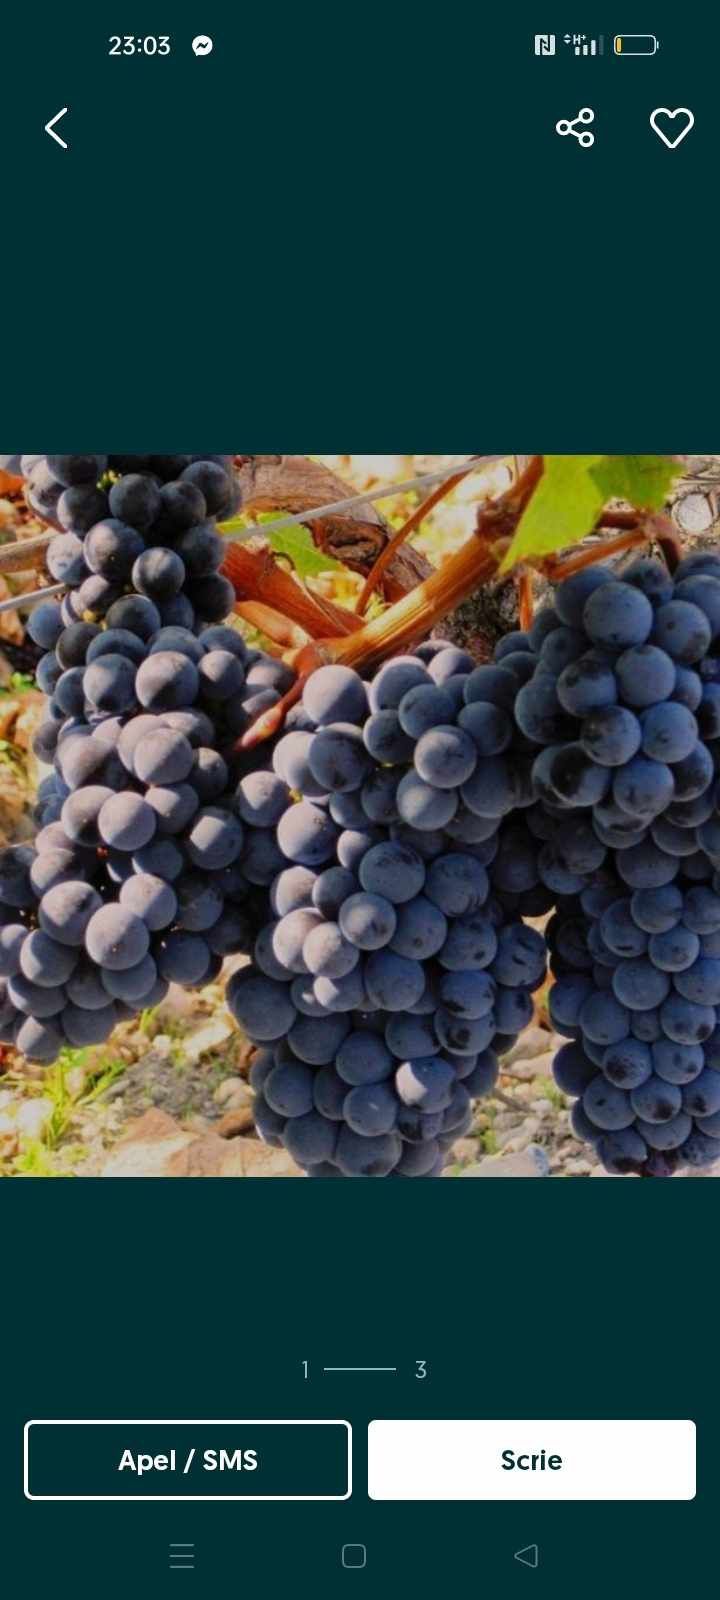 Vând struguri de vin calitatea superioară